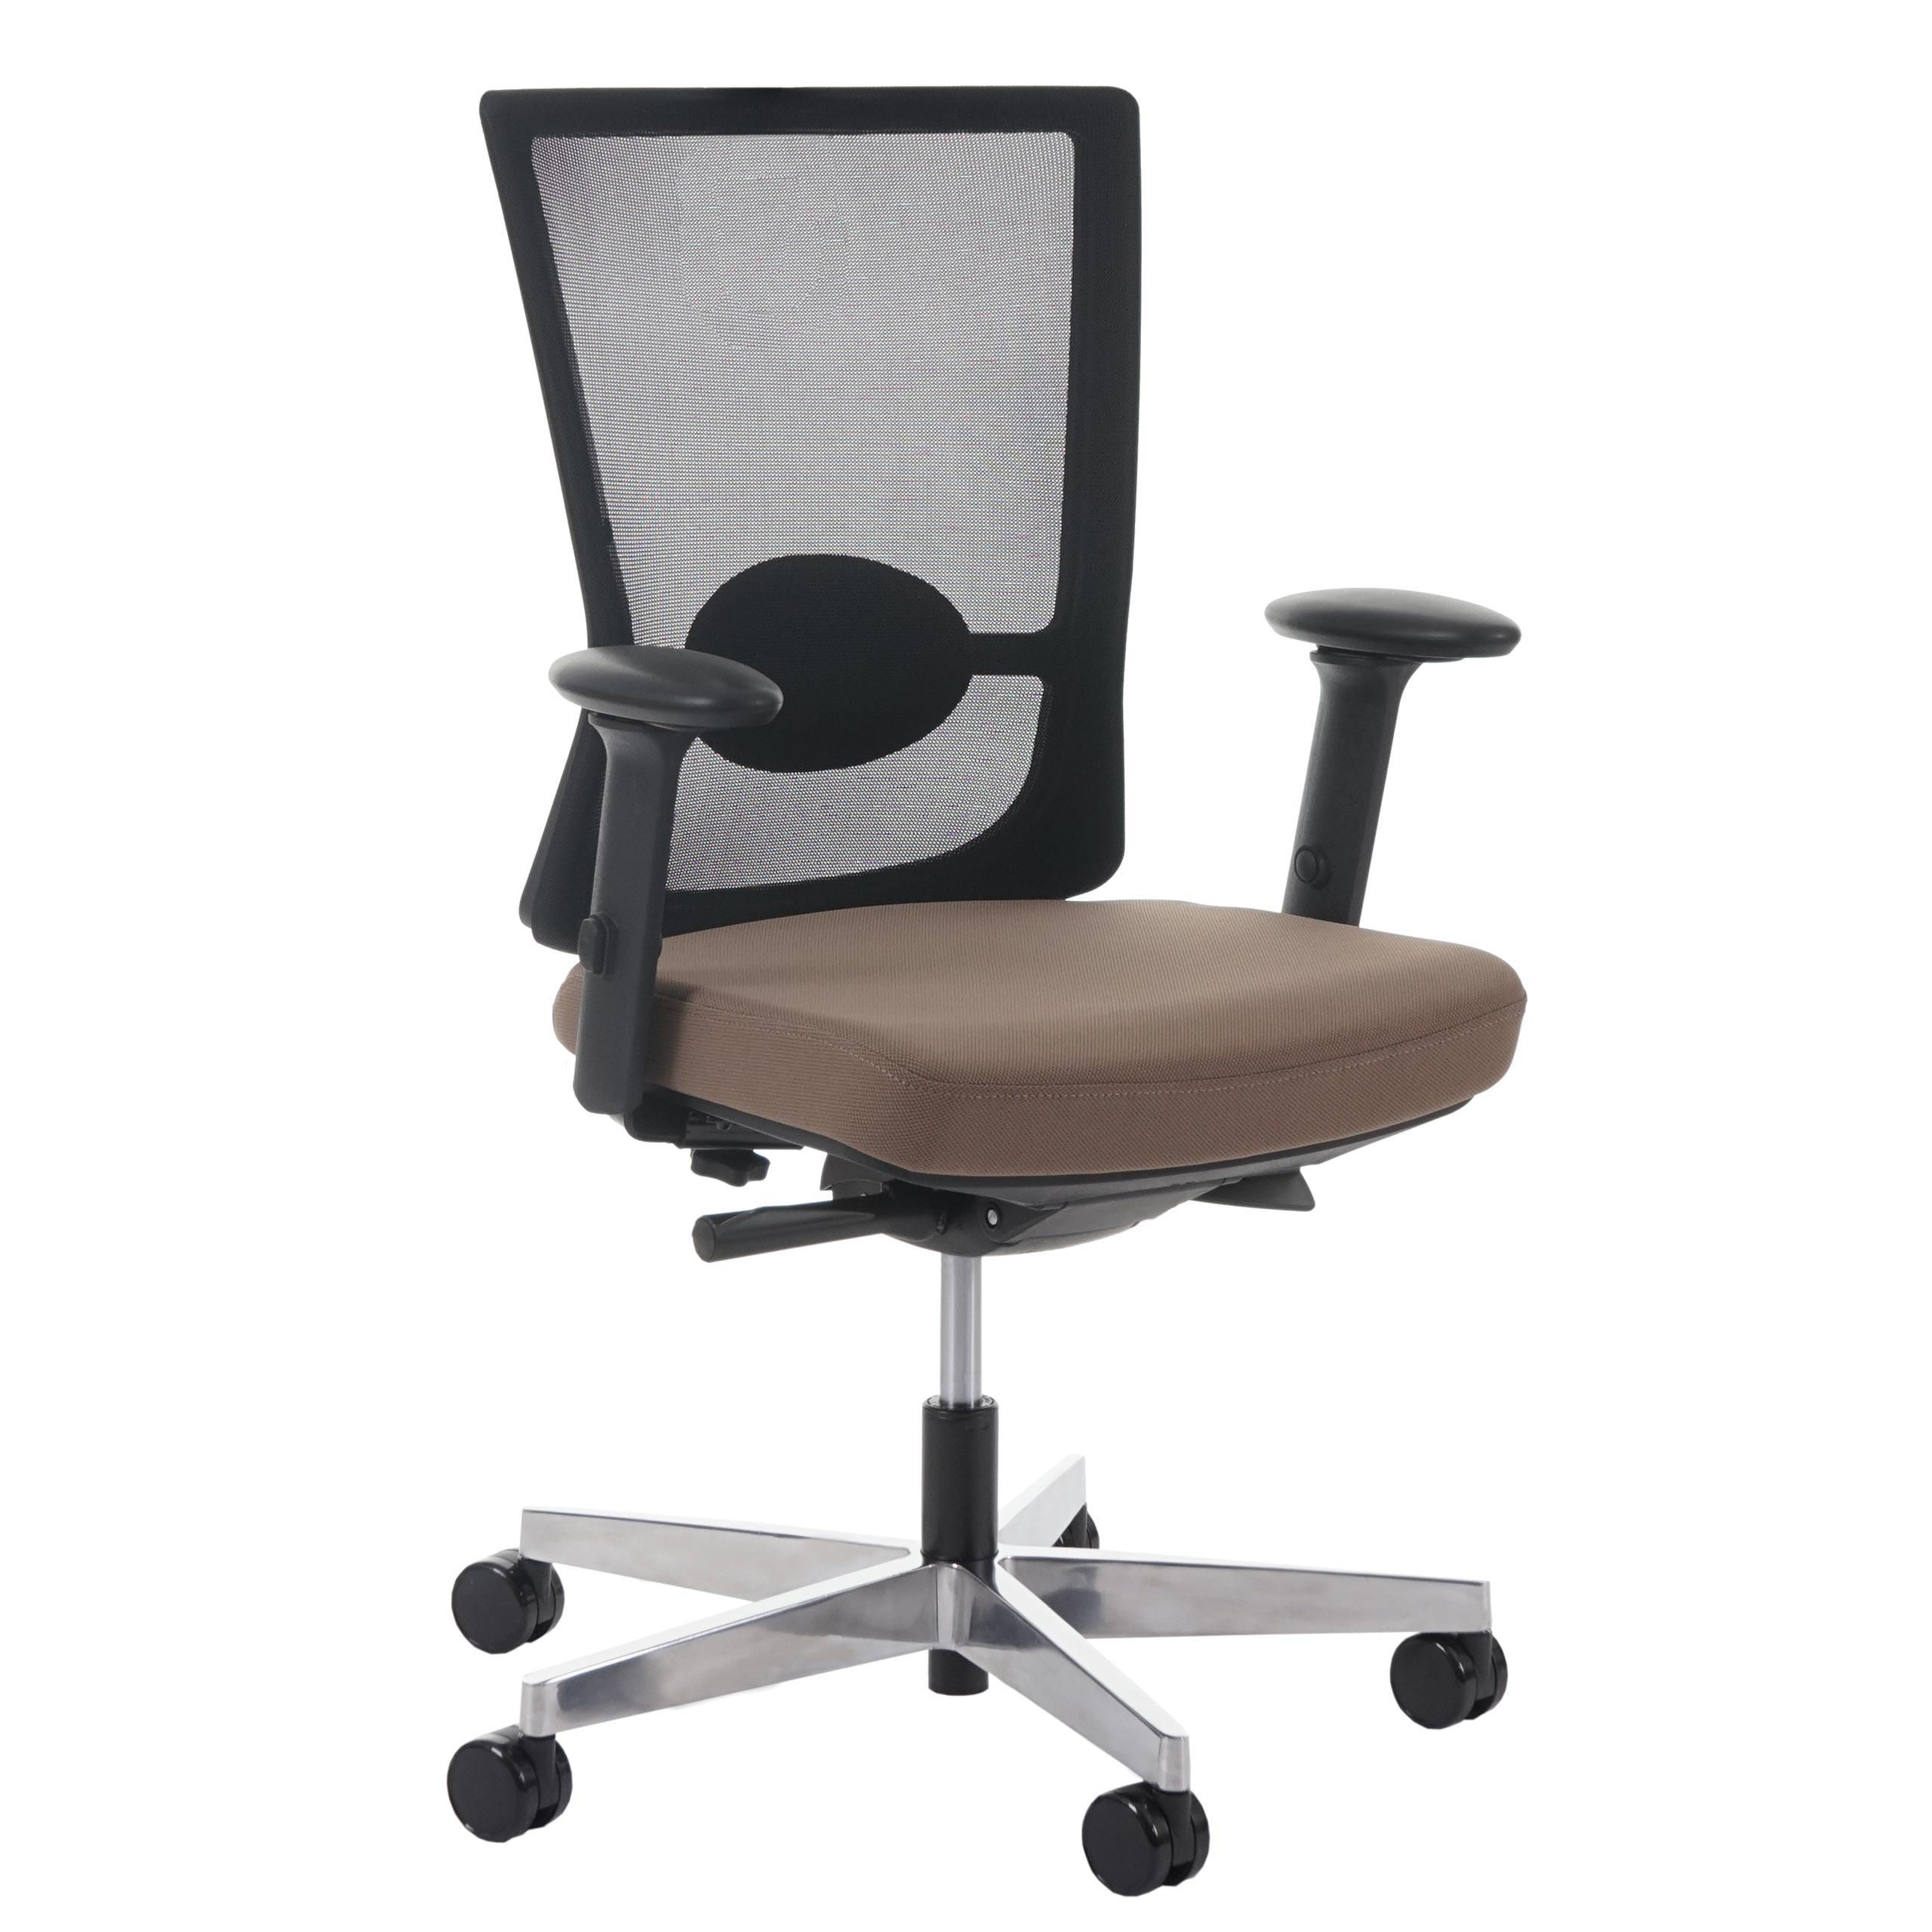 Chaise ergonomique NIL, 100% Ajustable, Excellente Qualité, Utilisation 8 heures, Marron